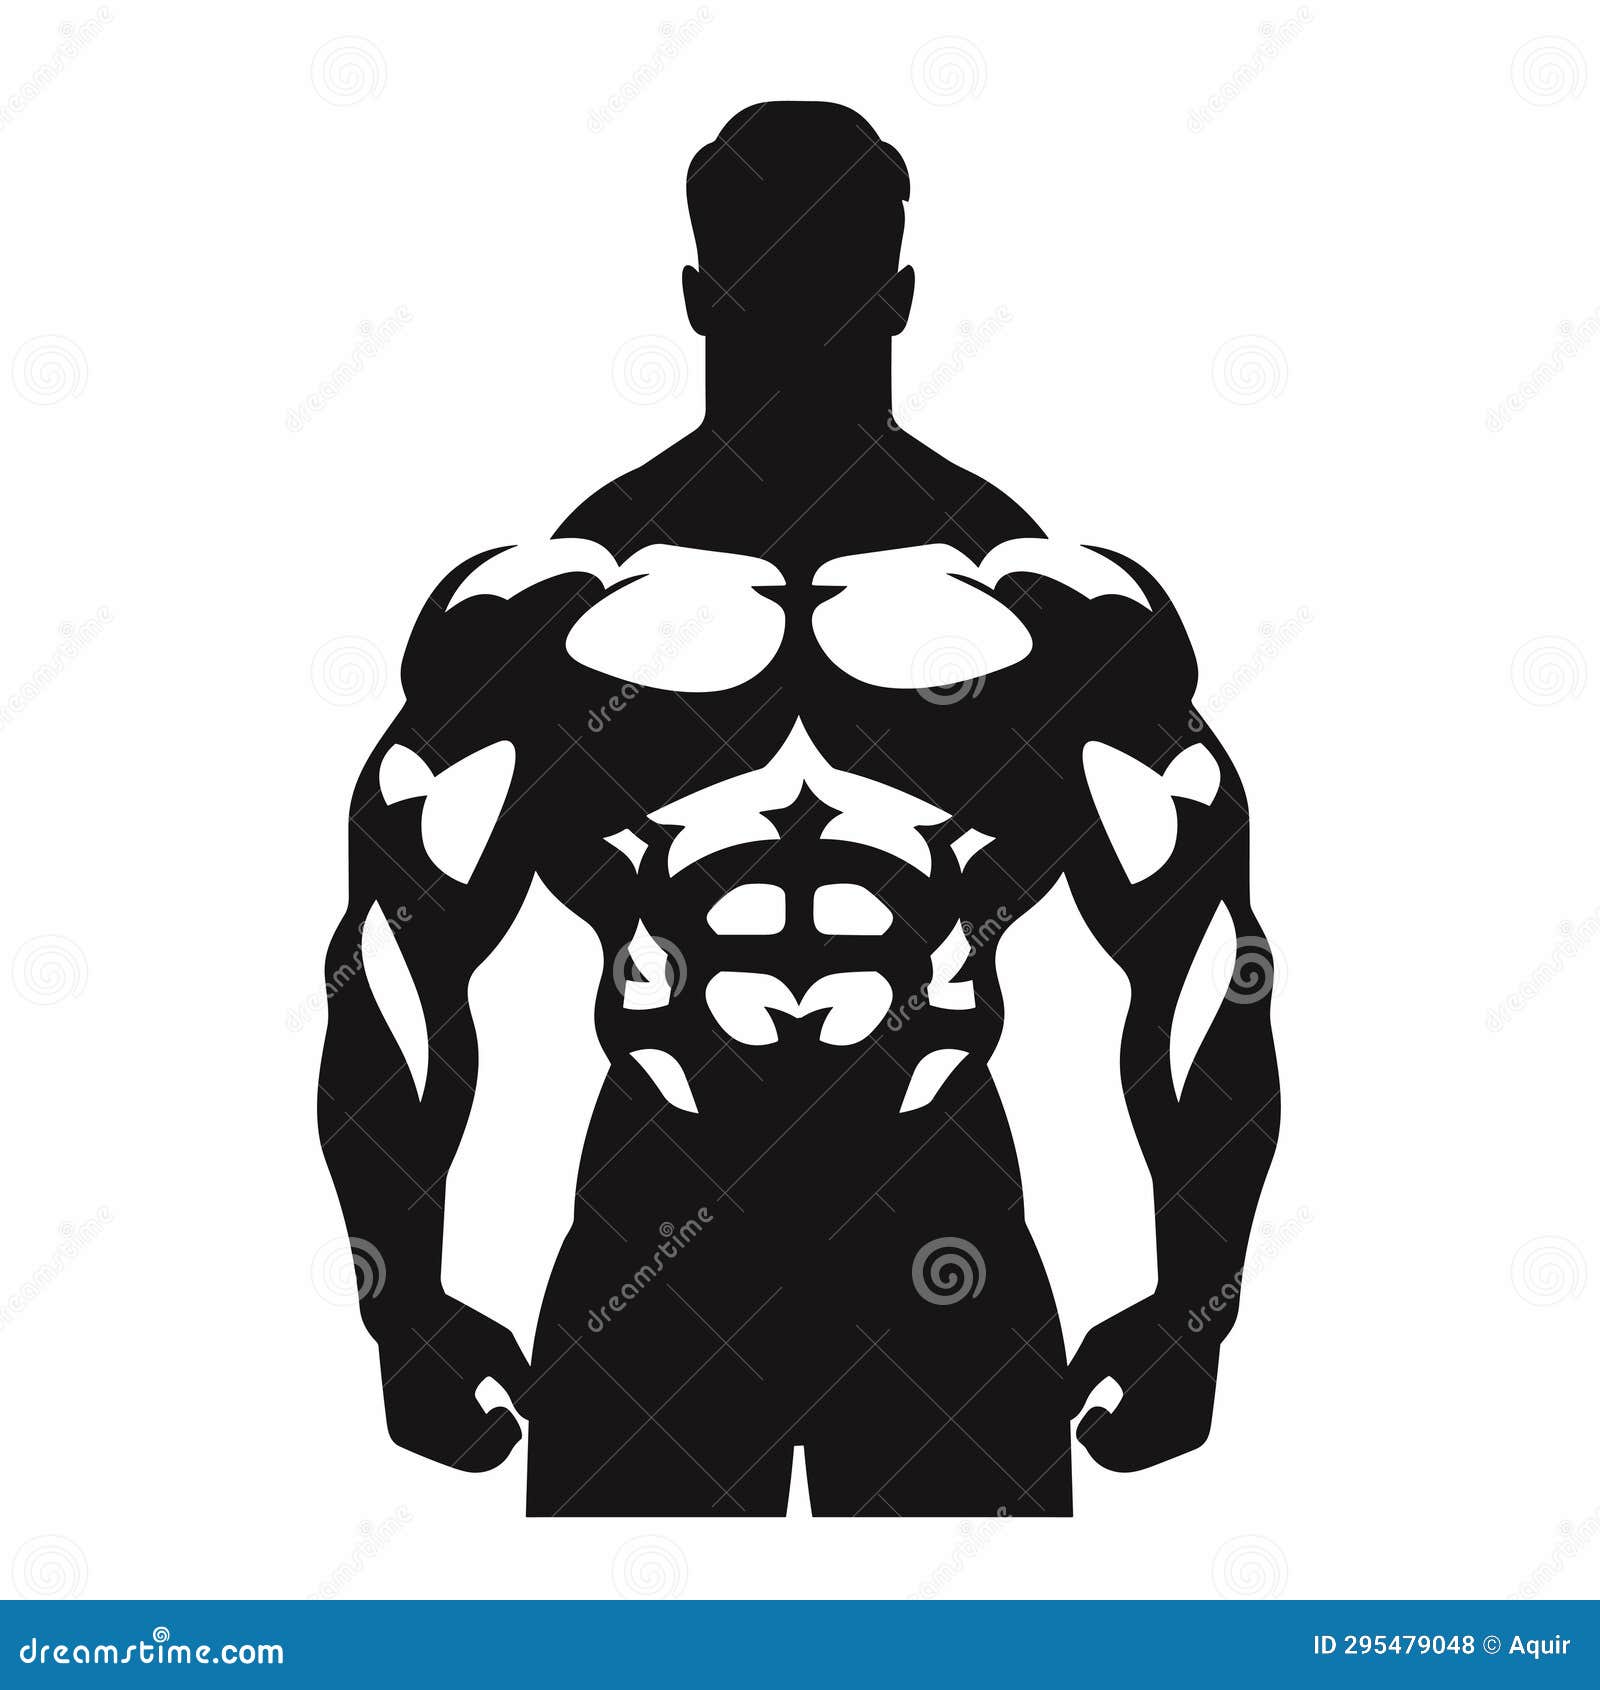 Bodybuilder Black Icon on White Background. Bodybuilder Silhouette ...